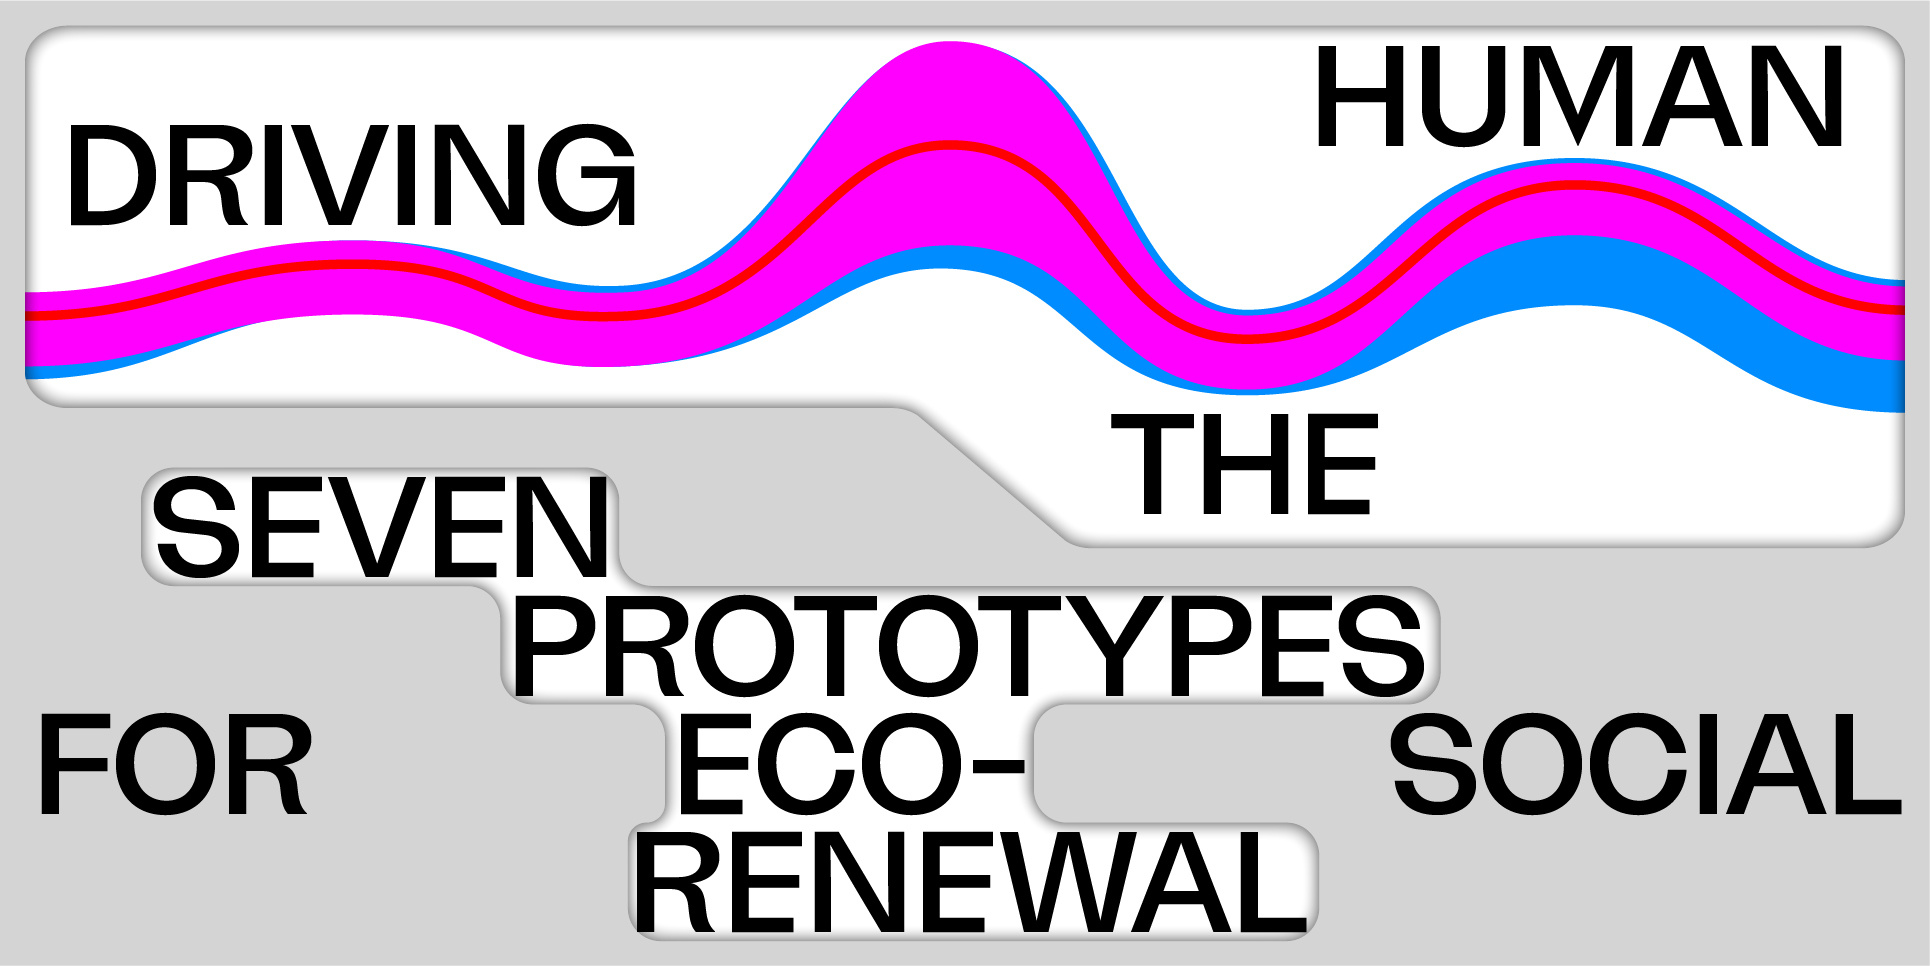 Zu sehen ist eine wellenartige Form welche sich durch die Mitte des Bildes zeiht. Über der Welle steht "Driving the Human". im unteren Bereich des Bildes stehen vereinzelte Worte: seven prototypes oft eco-social renewal. 